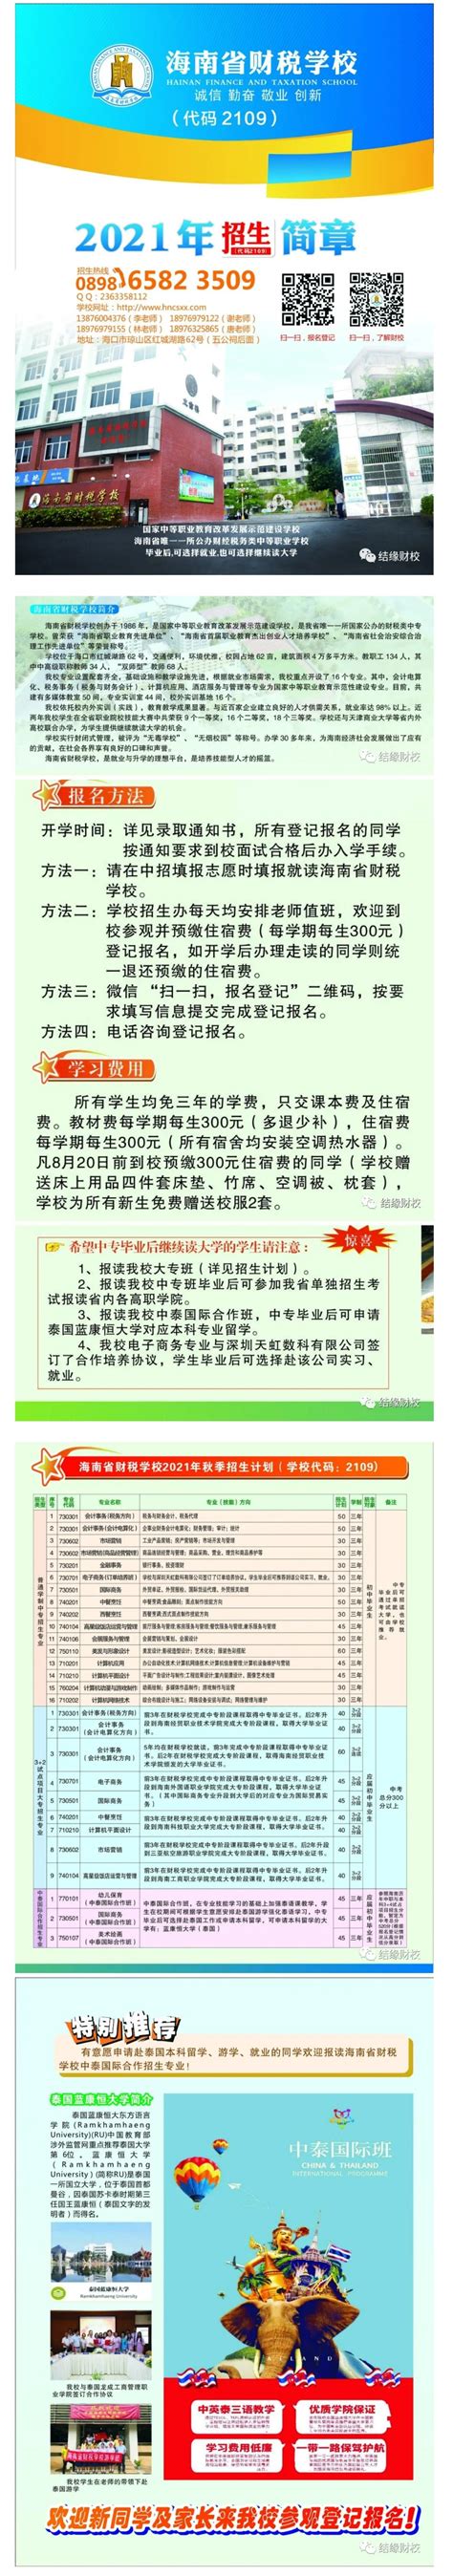 海南省财税学校2021年招生简章 - 职教网